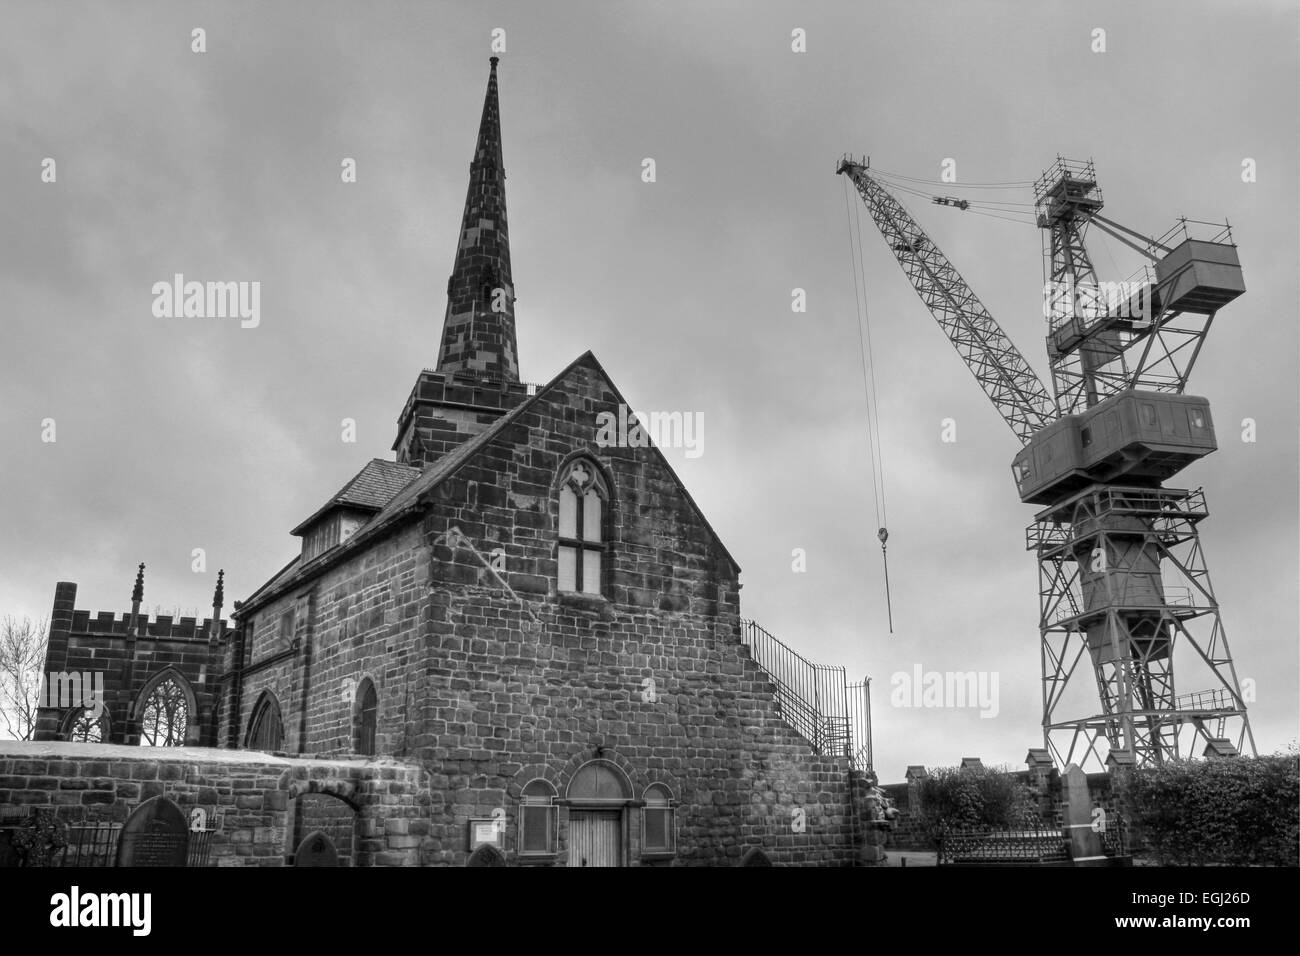 Bianco e nero fotografia HDR di Birkenhead Priory con una gru della adiacente Cammell Laird Costruttori Navali Foto Stock